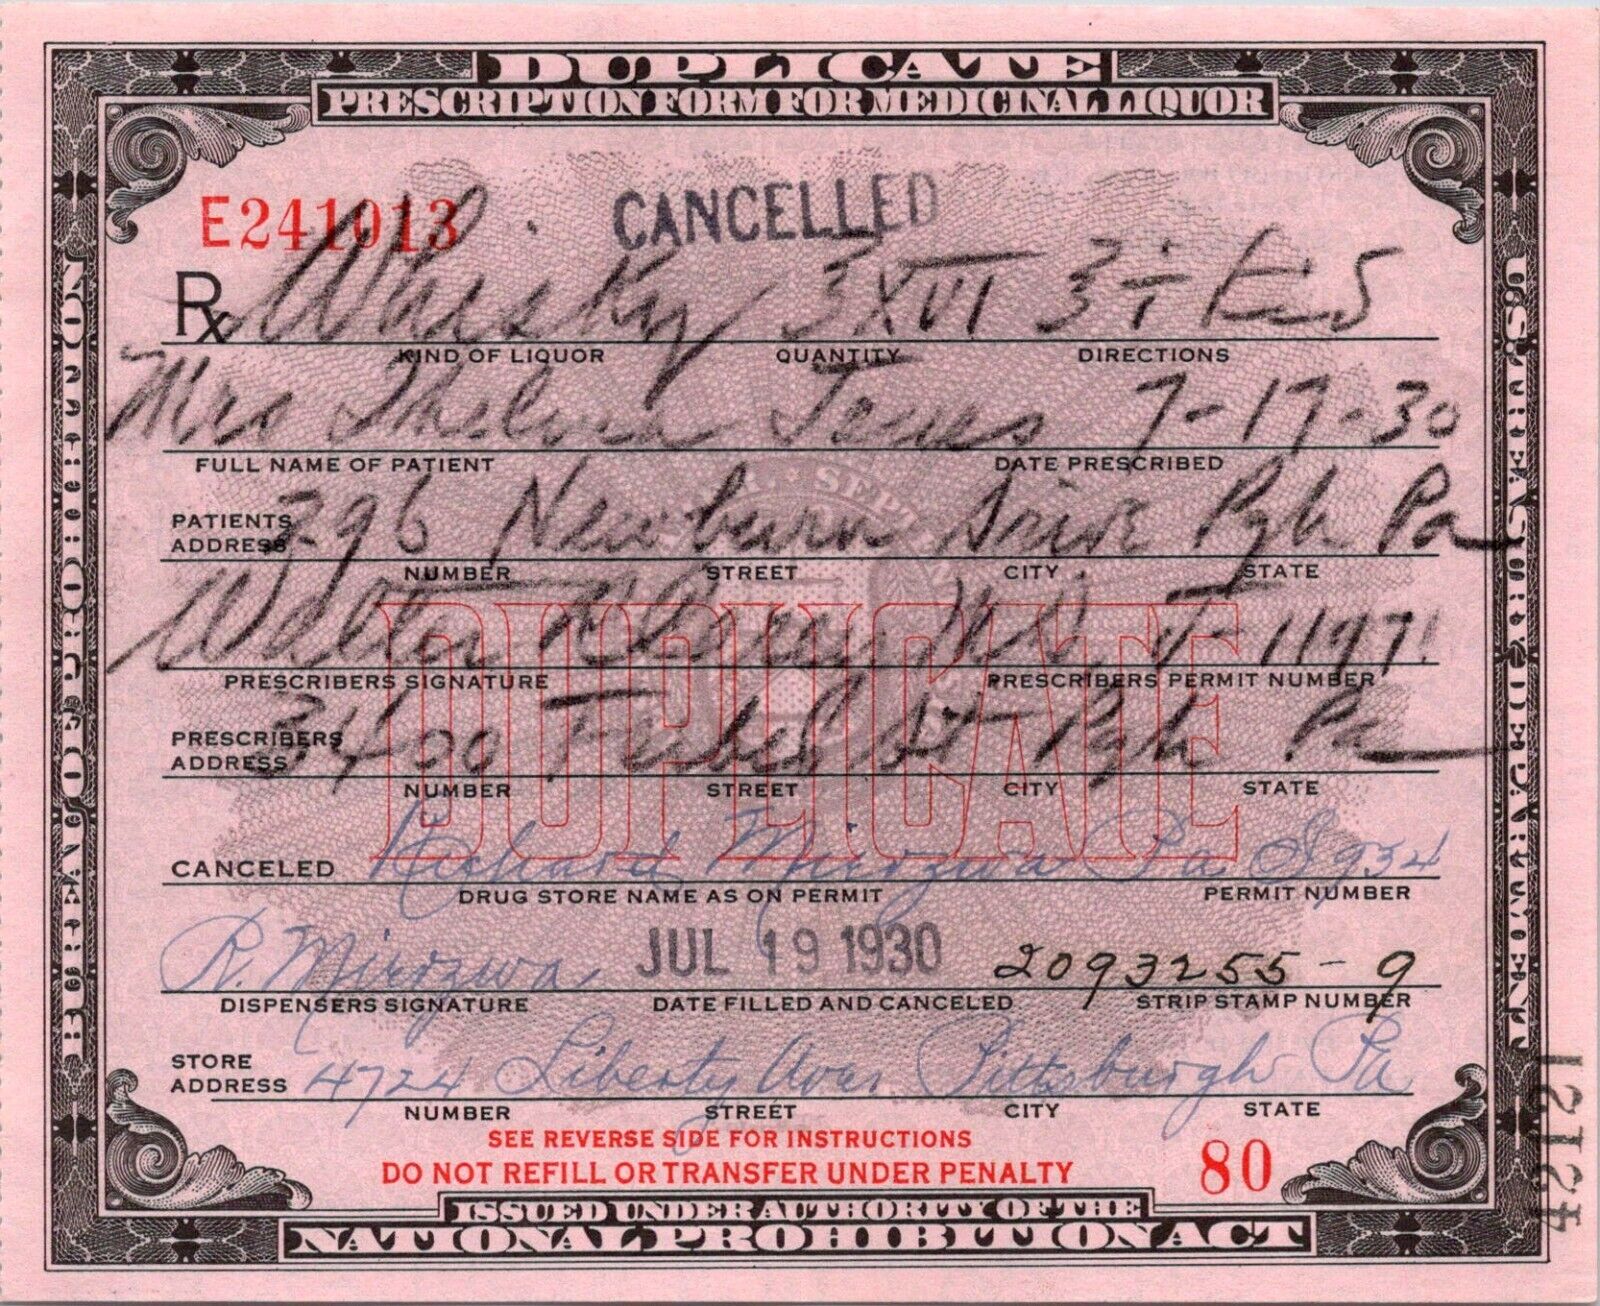 Prohibition Era Prescription Form for Medicinal Liquor, Pittsburgh, PA 1930 RX